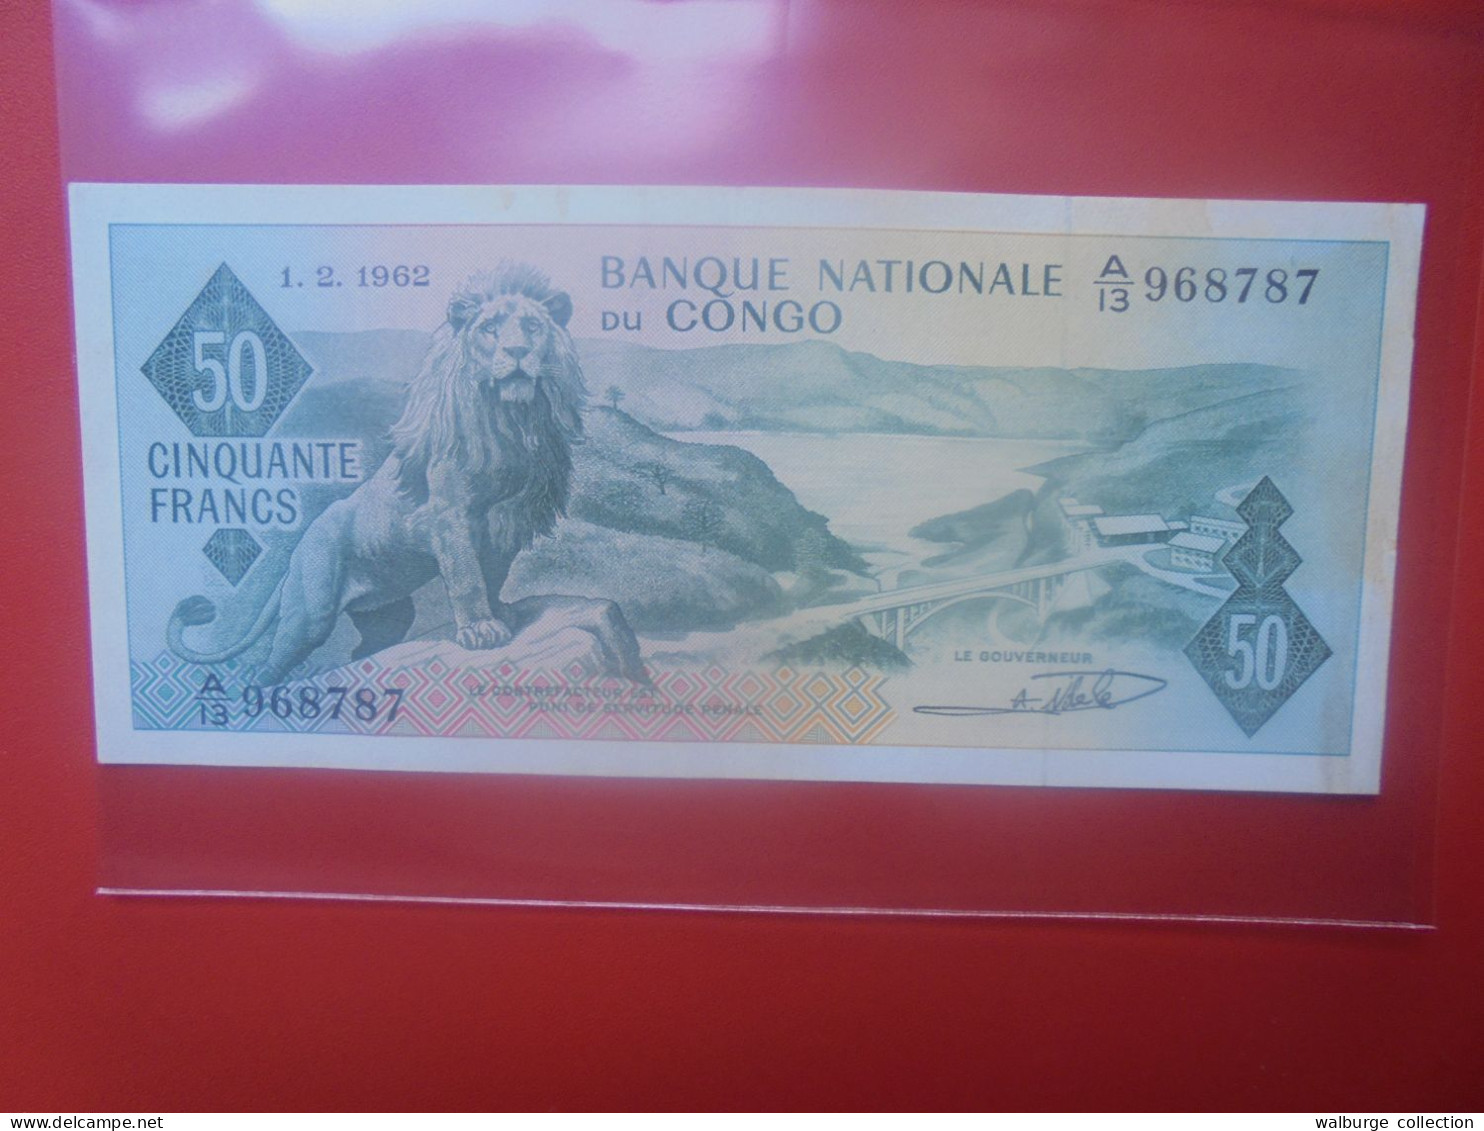 EX-CONGO BELGE 50 FRANCS 1962 Circuler (B.33) - Belgian Congo Bank